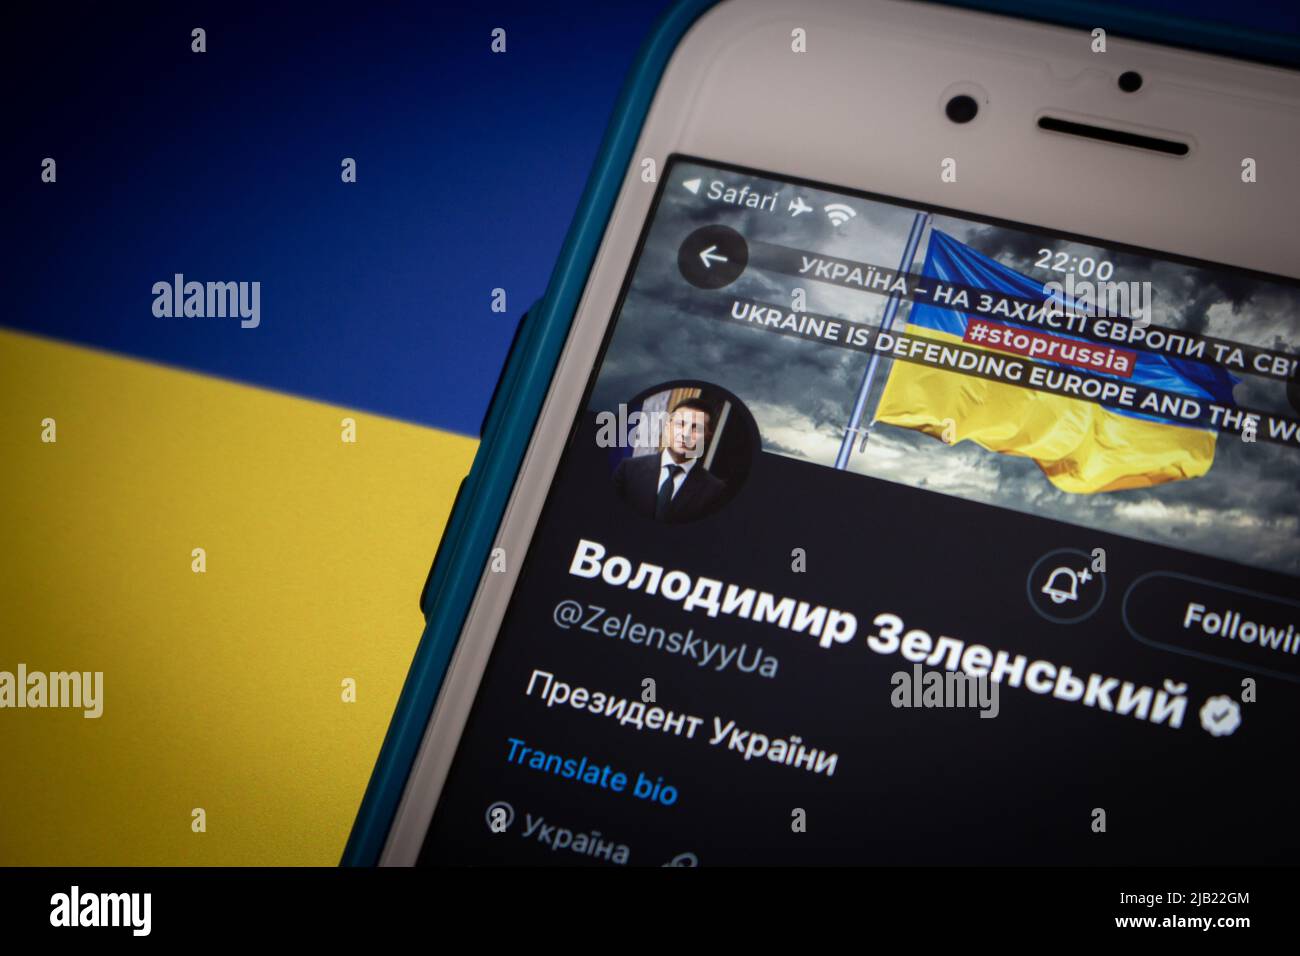 Compte Twitter de Volodymyr Zelenskyy, le 6th et président sortant de l'Ukraine (ancien acteur et comédien), sur iPhone sur un drapeau ukrainien d'humeur sombre Banque D'Images